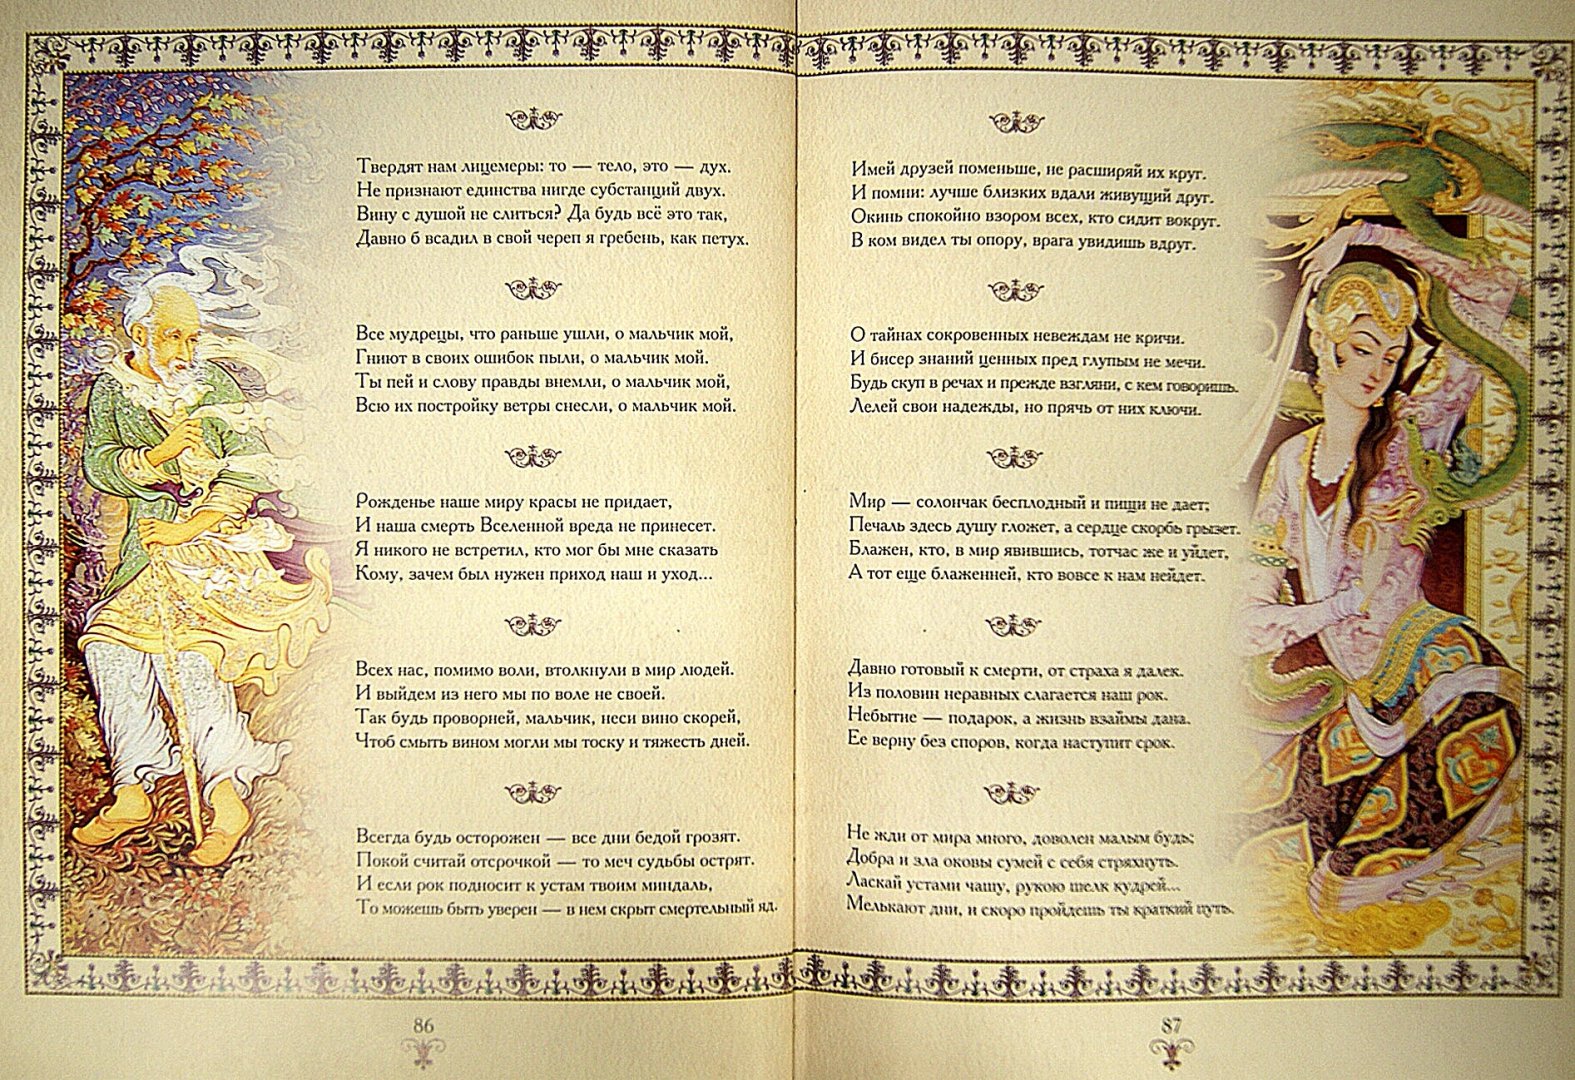 Иллюстрация 1 из 2 для Шедевры поэзии Востока - Хайям, Хафиз, Саади | Лабиринт - книги. Источник: Лабиринт